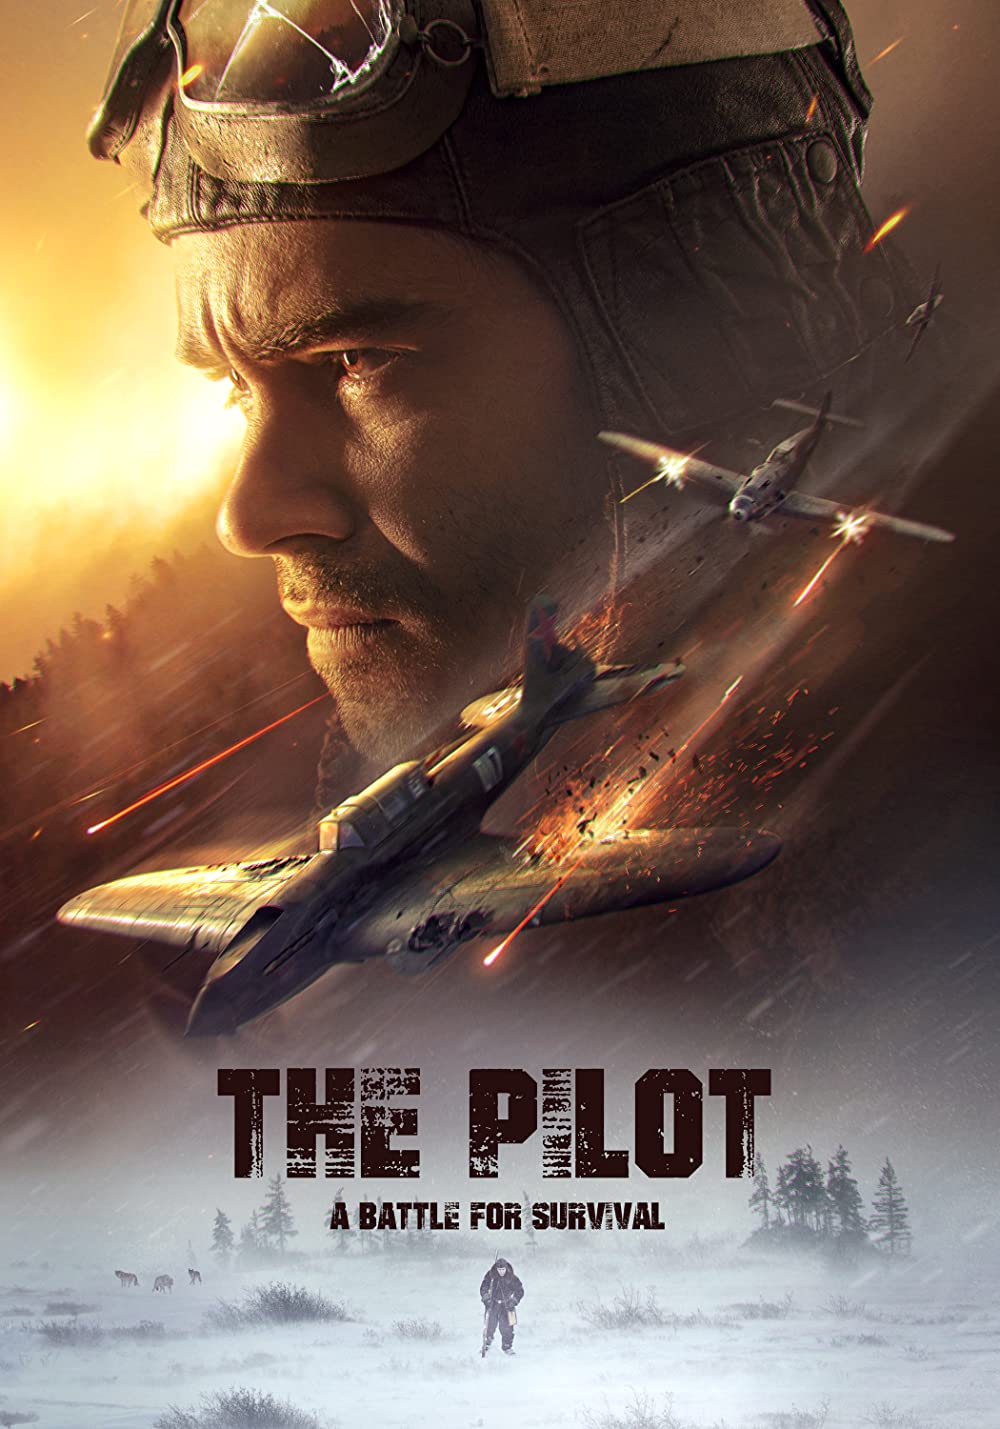 The Pilot - A Battle for Survival